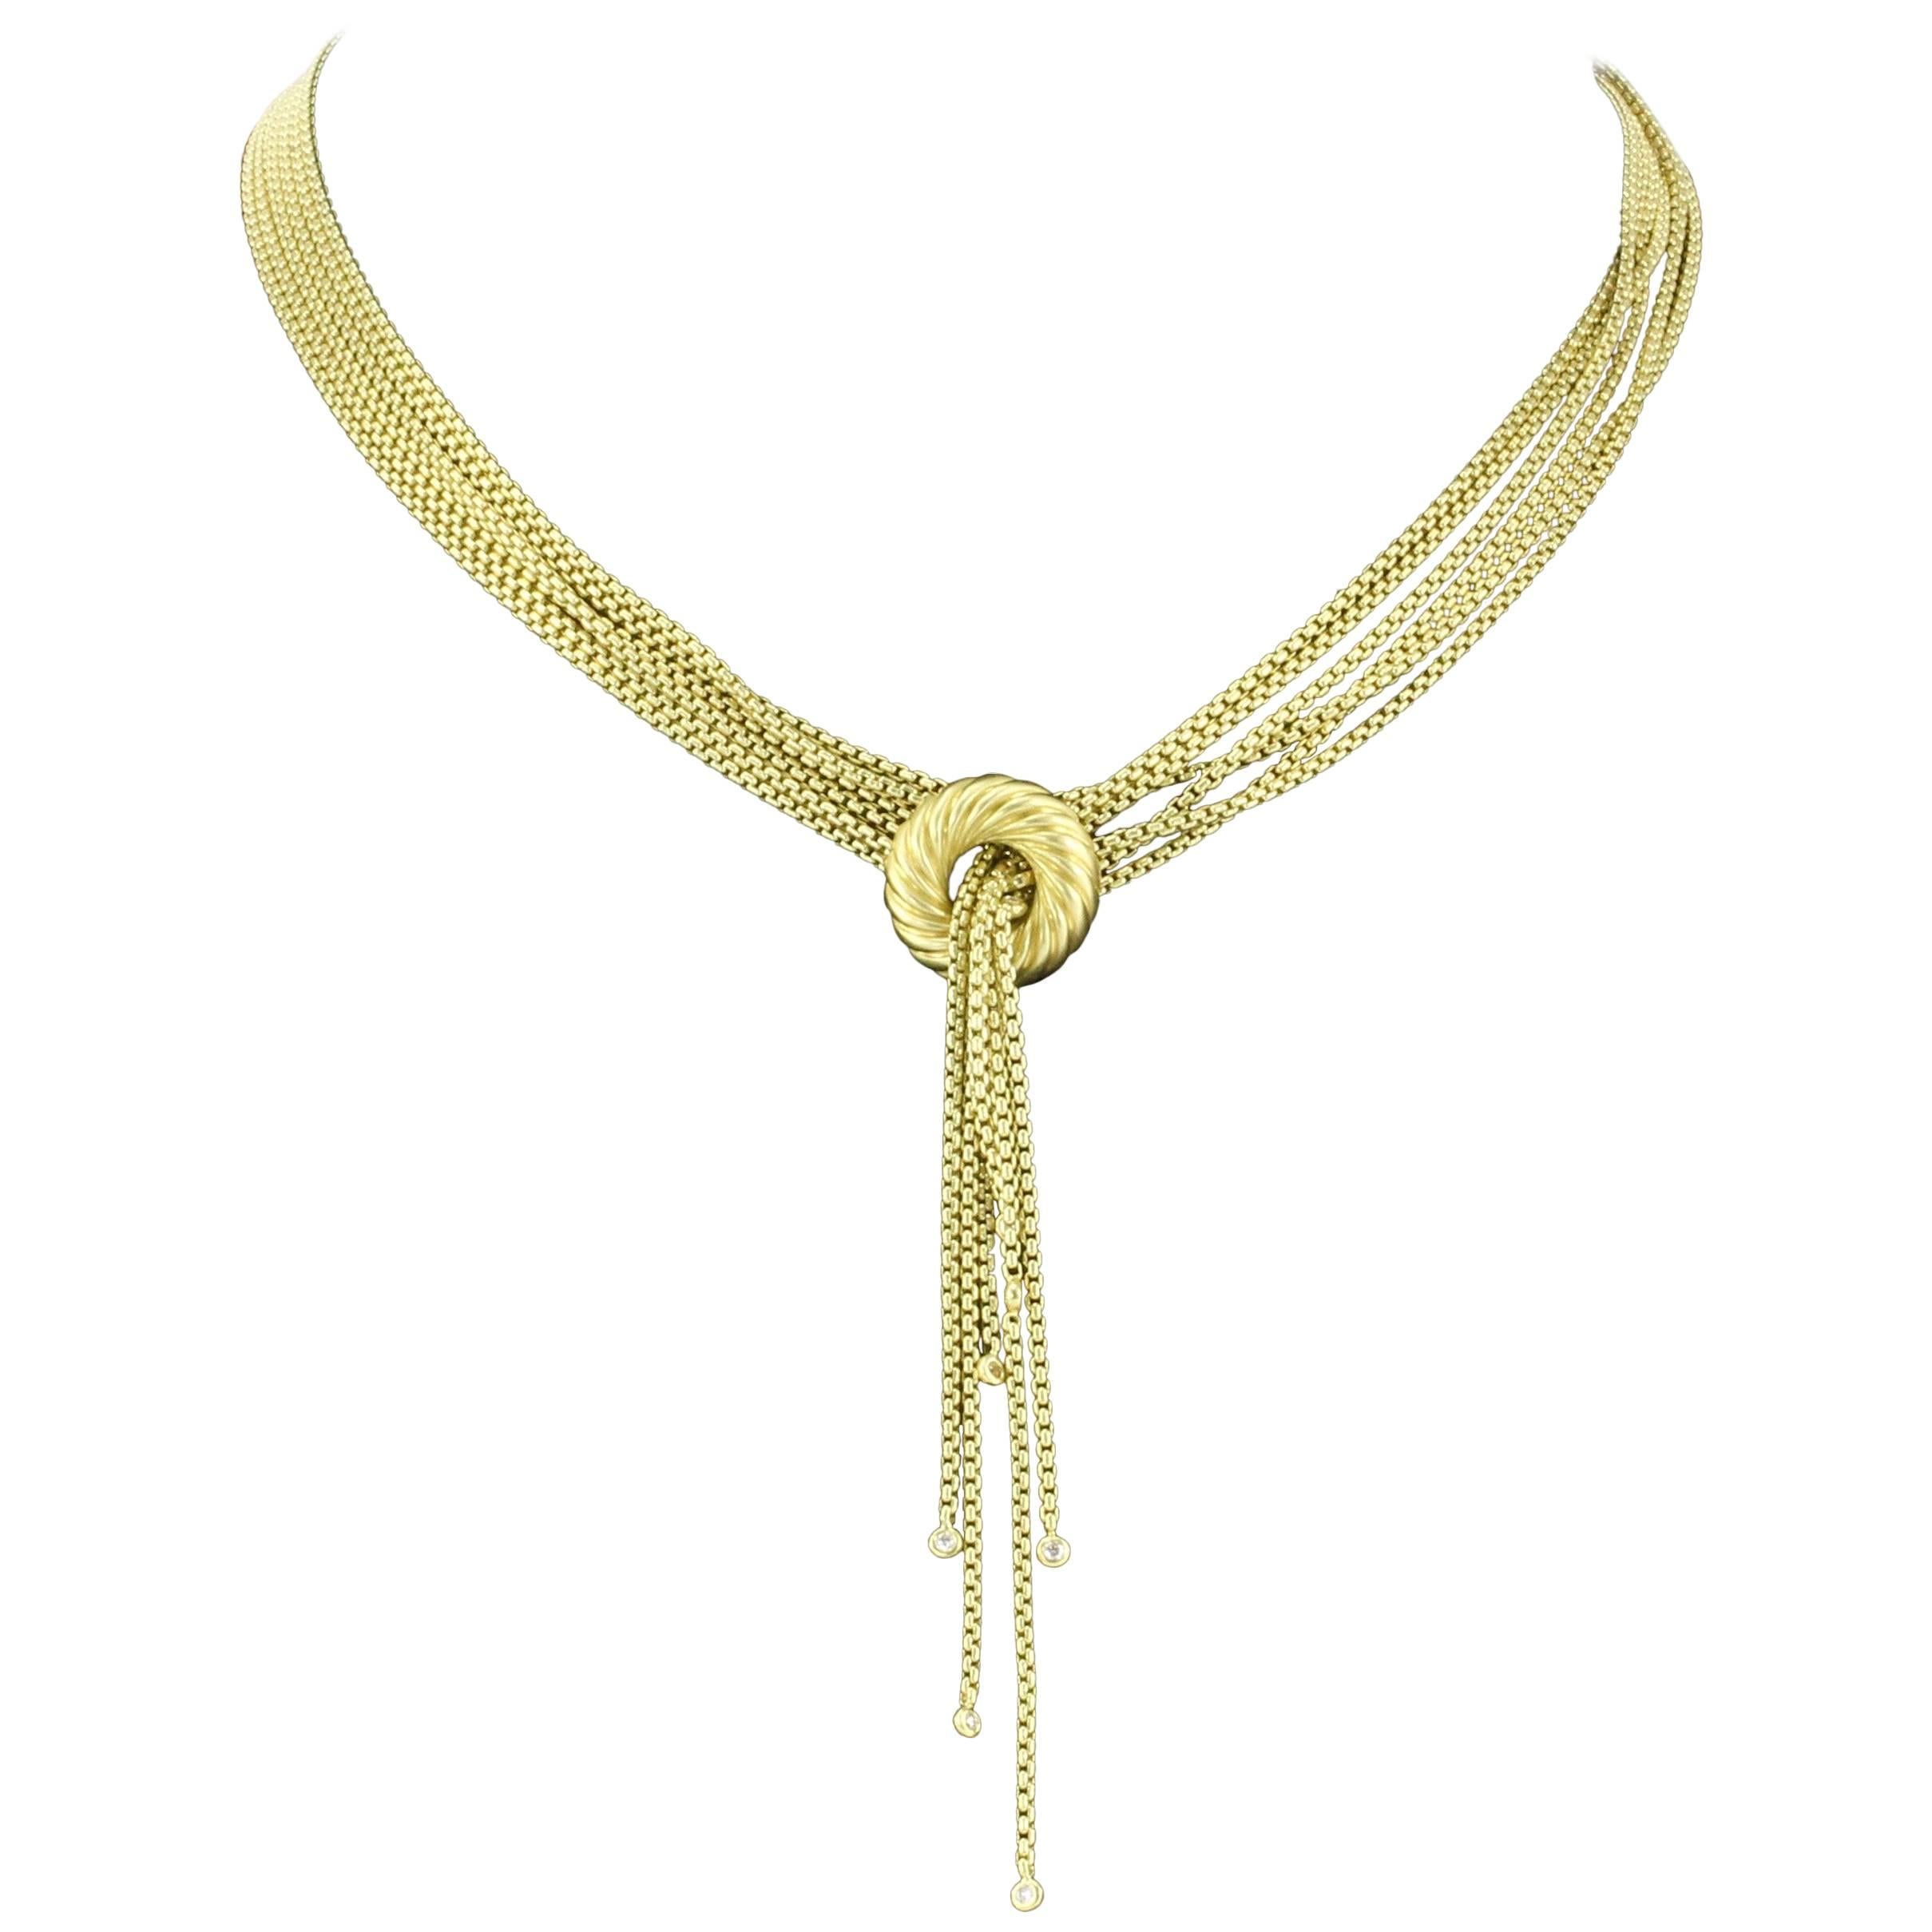 David Yurman 18 Karat Satin Finish Yellow Gold and Diamond Lariat Necklace